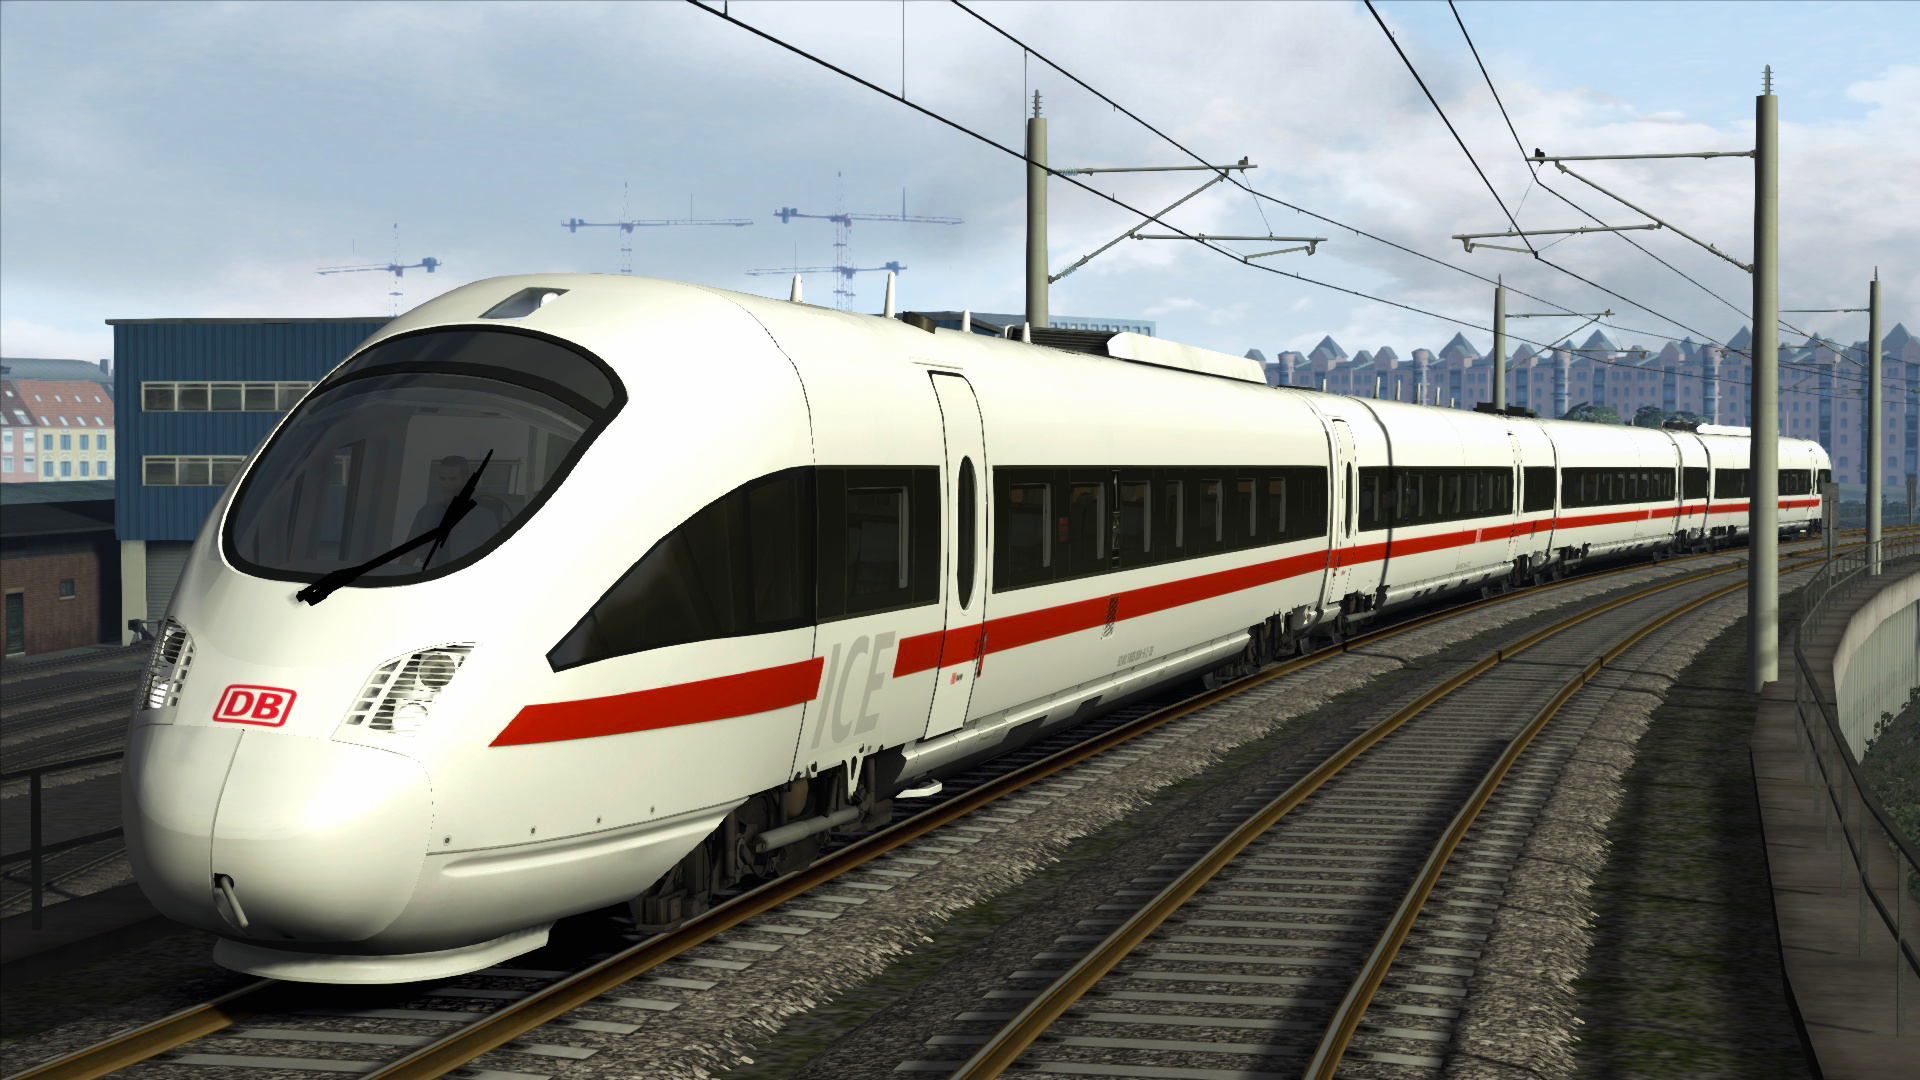 Train Simulator - DB BR 605 ICE TD Add-On DLC Steam CD Key, 1.34$